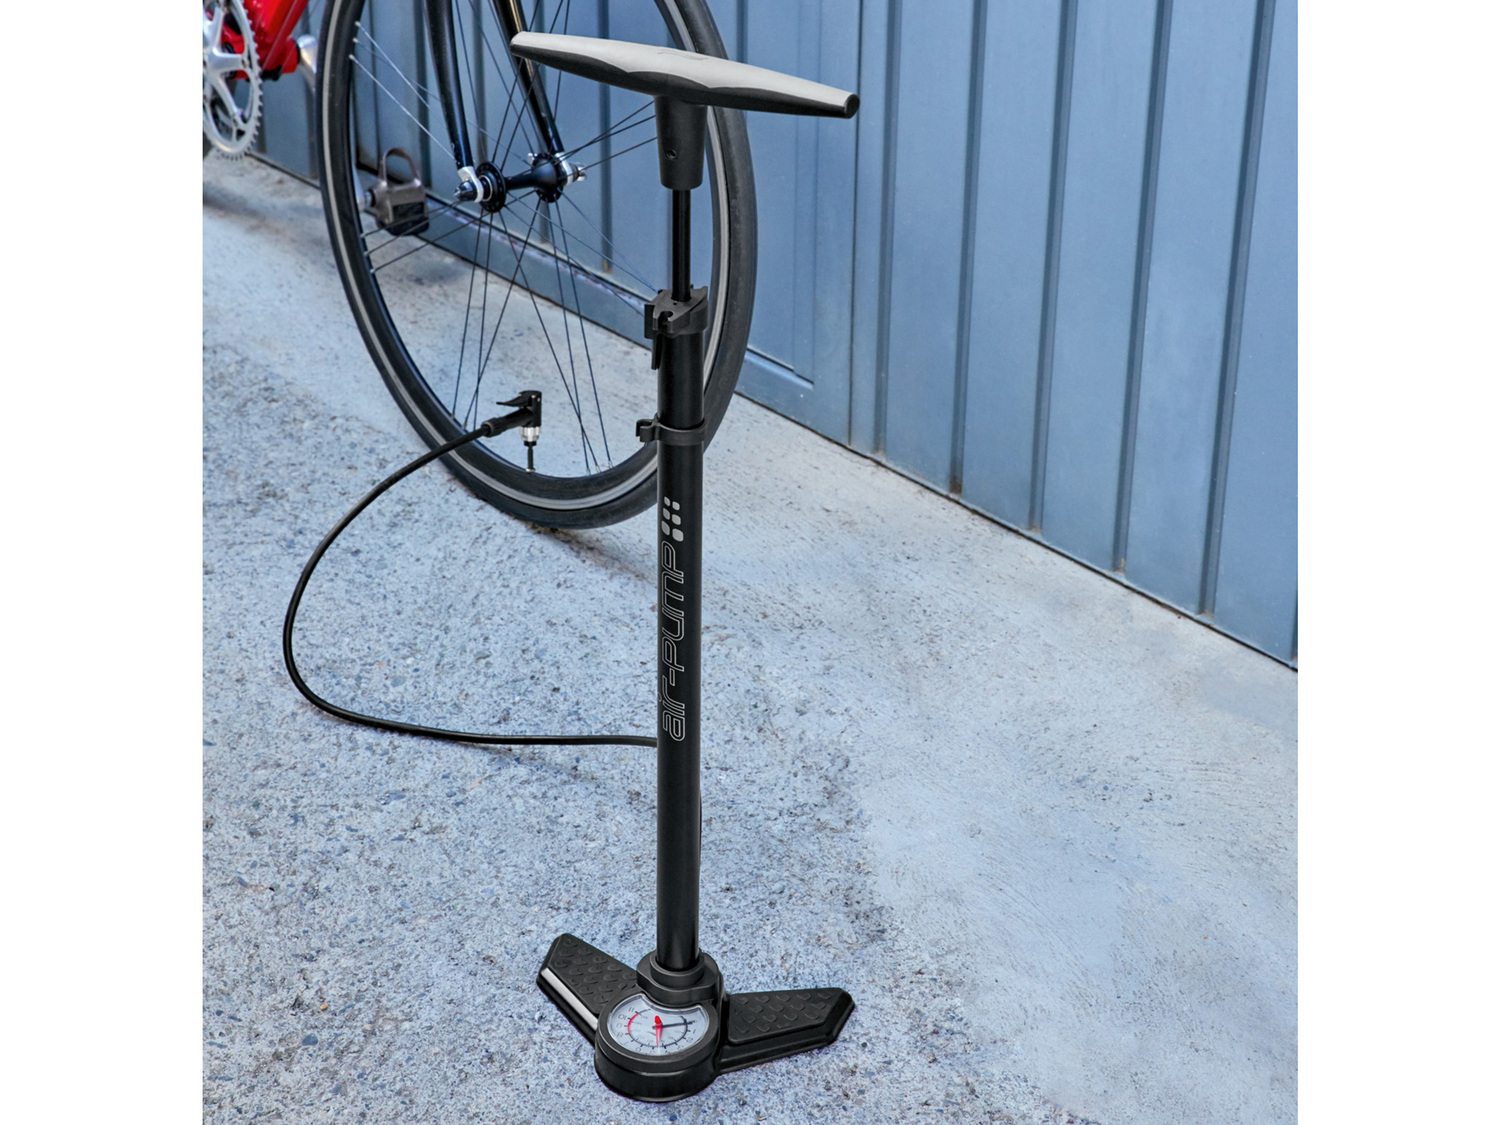 Pompa per bici con manometro Crivit, prezzo 7.99 &#8364; 
- Testa della pompa ...